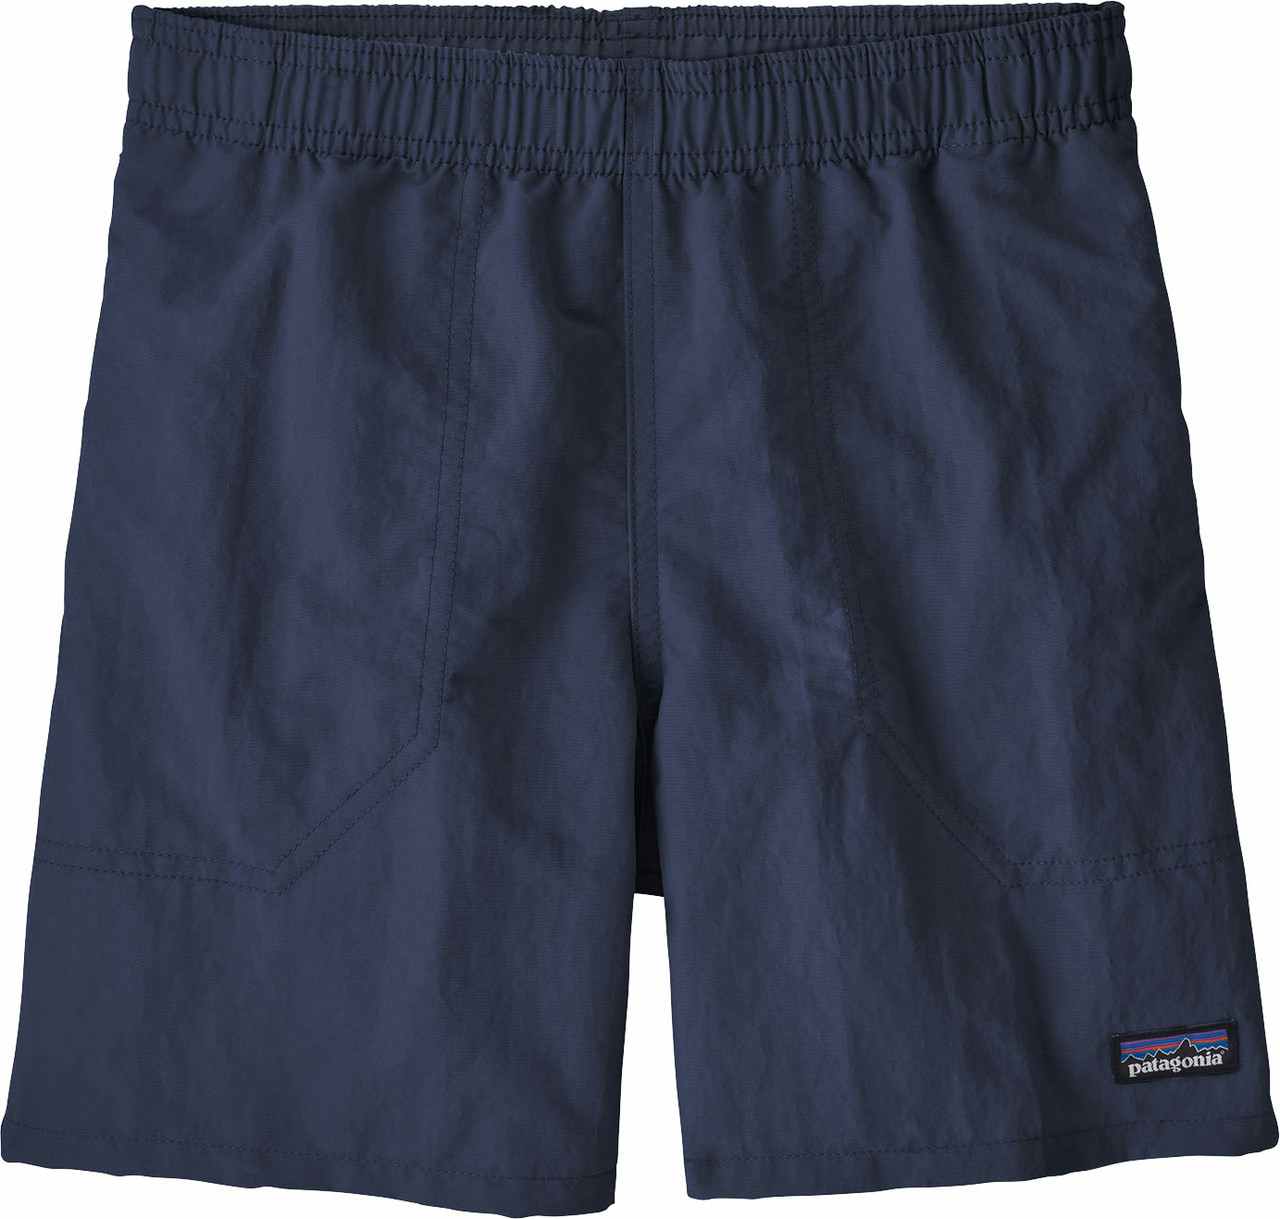 Baggies 5" Shorts New Navy